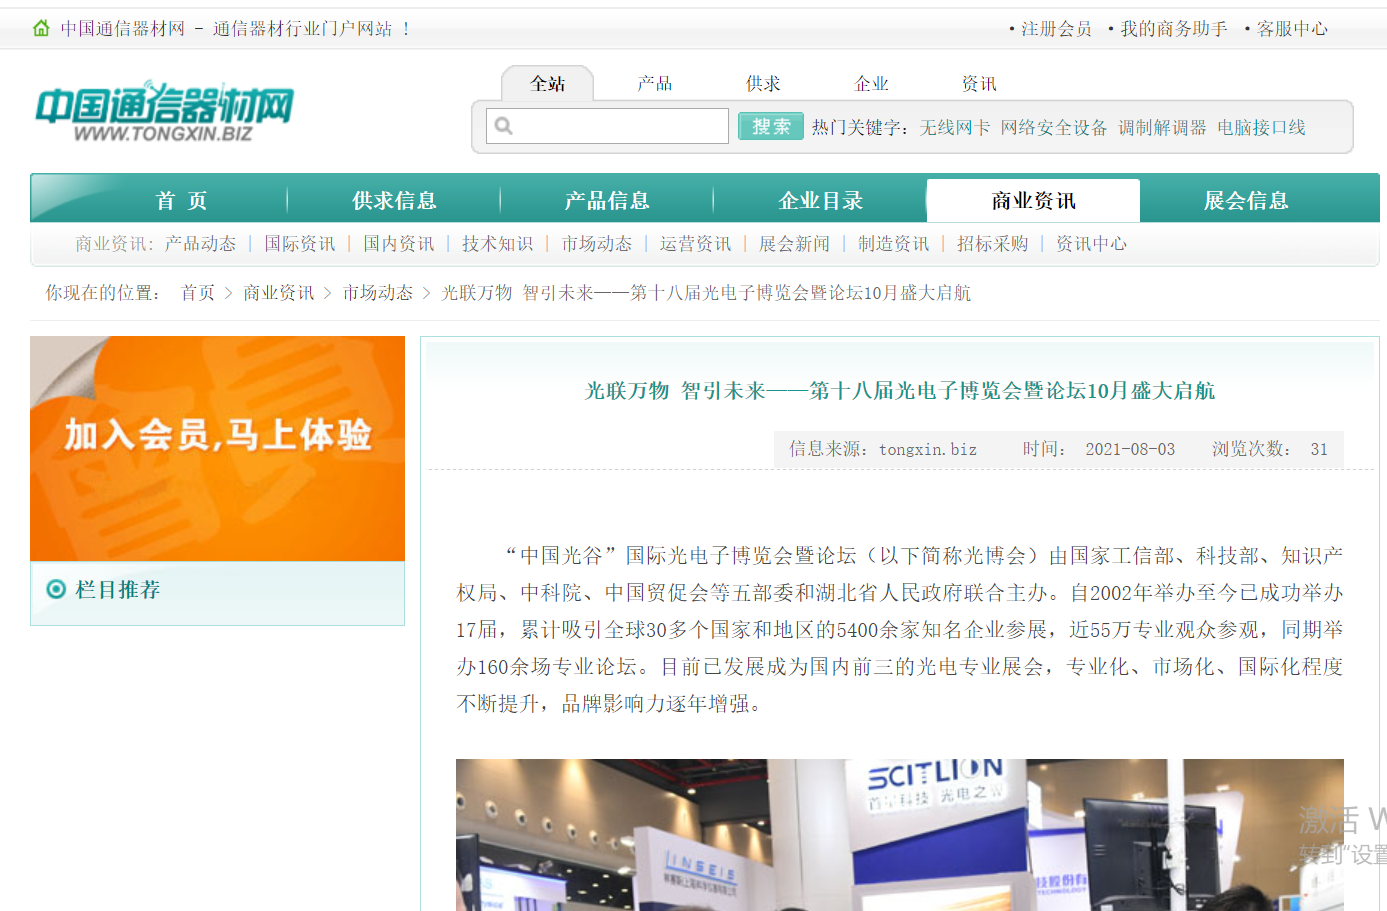 中国通讯器材网发布2021武汉光博会10月27日举办新闻(图1)